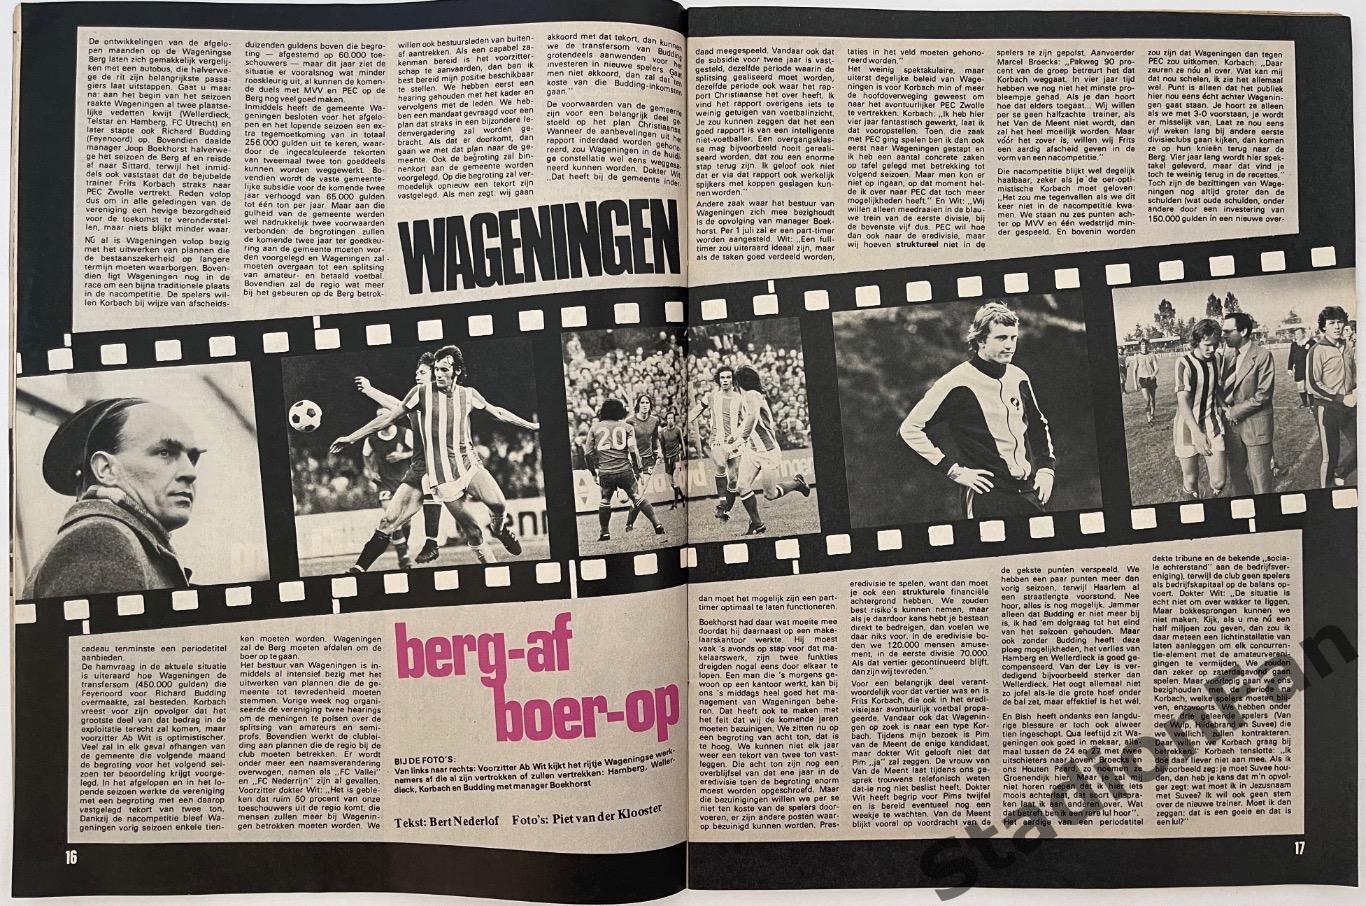 Журнал Voetbal nr.12 - 1977 год. 4